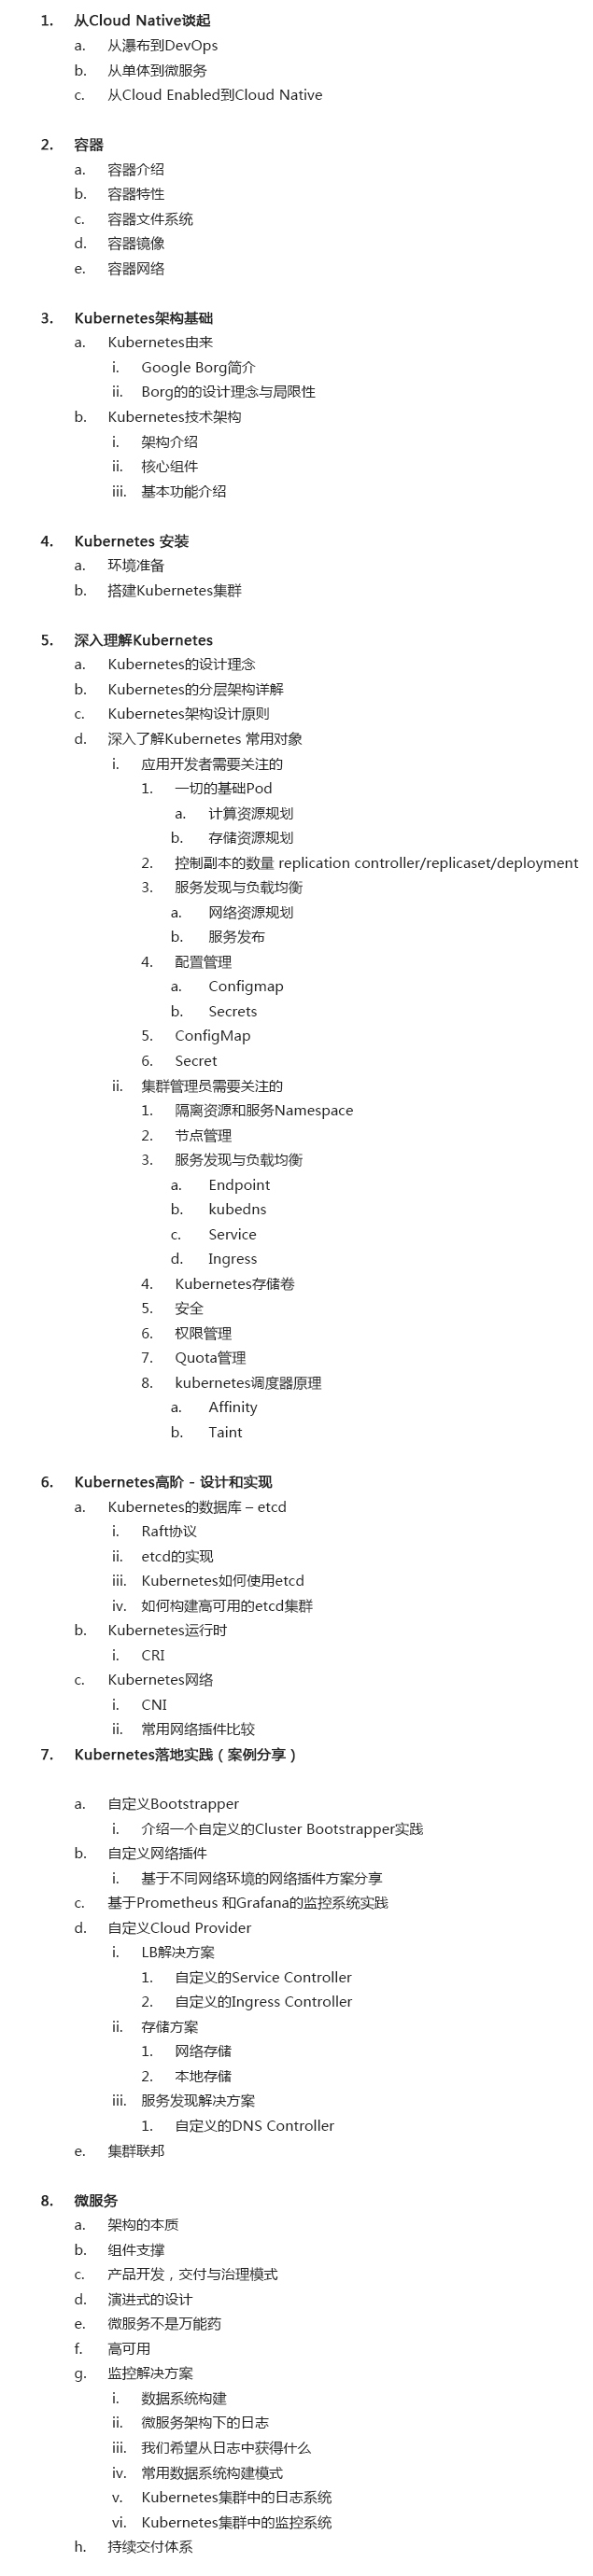 基于Kubernetes的DevOps实战培训 | 6月上海站